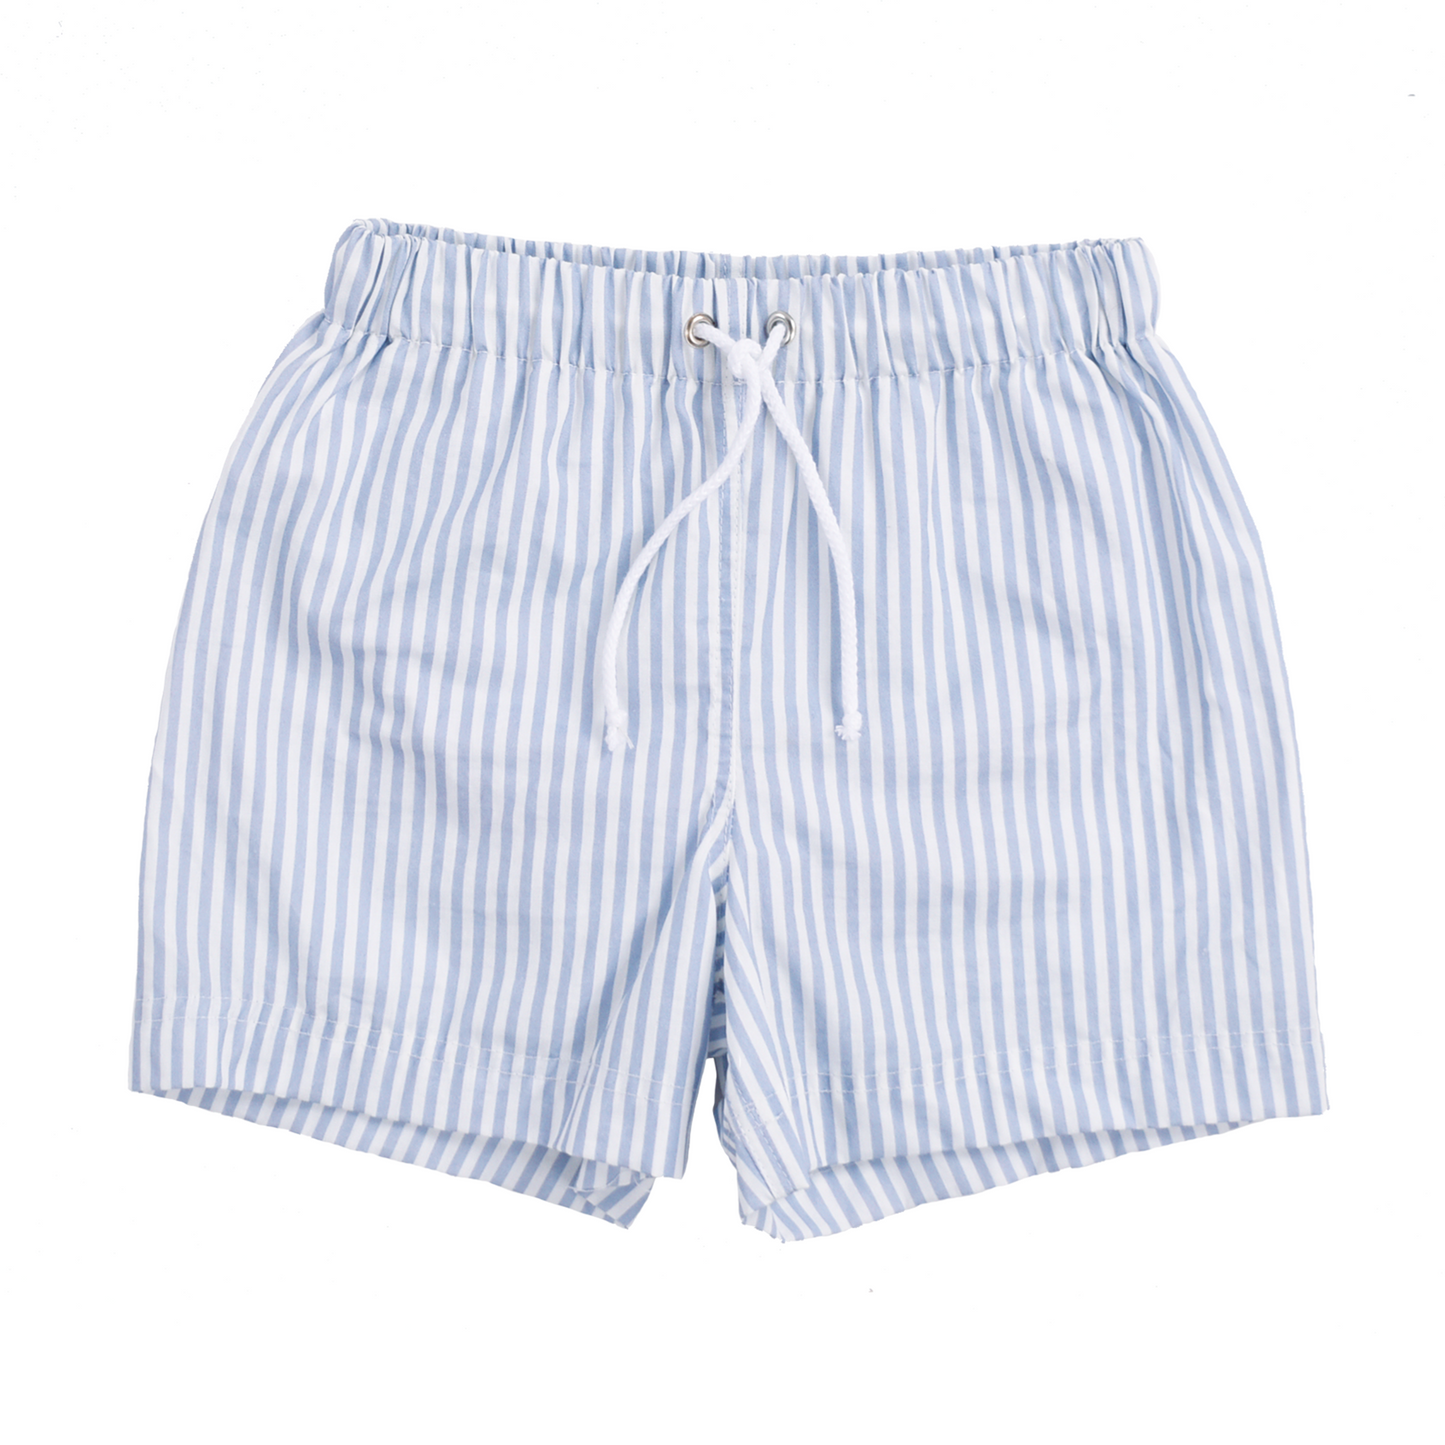 SE UV Swimming Short Boys/Men Blue White Striped